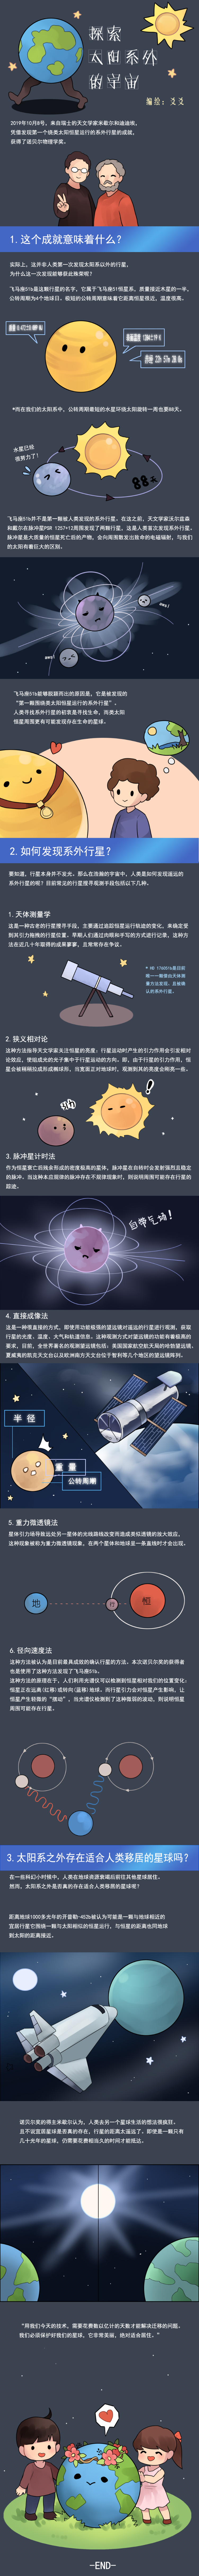 原创小漫画 探索太阳系外的宇宙 中国数字科技馆